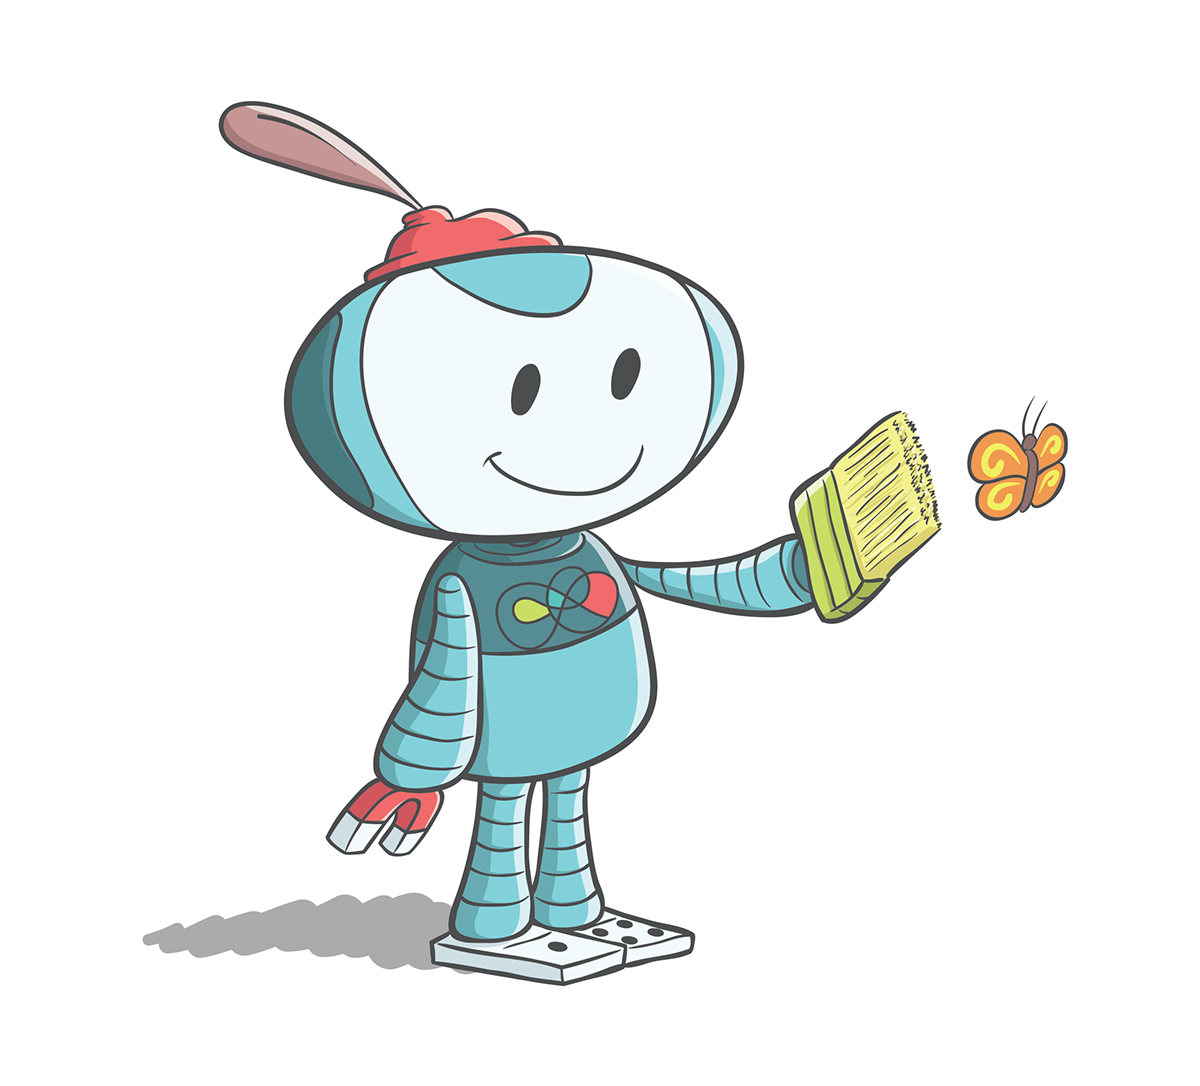 Adobe Portfolio mascote robo Ilustração robot Mascot Illustrator Character design 